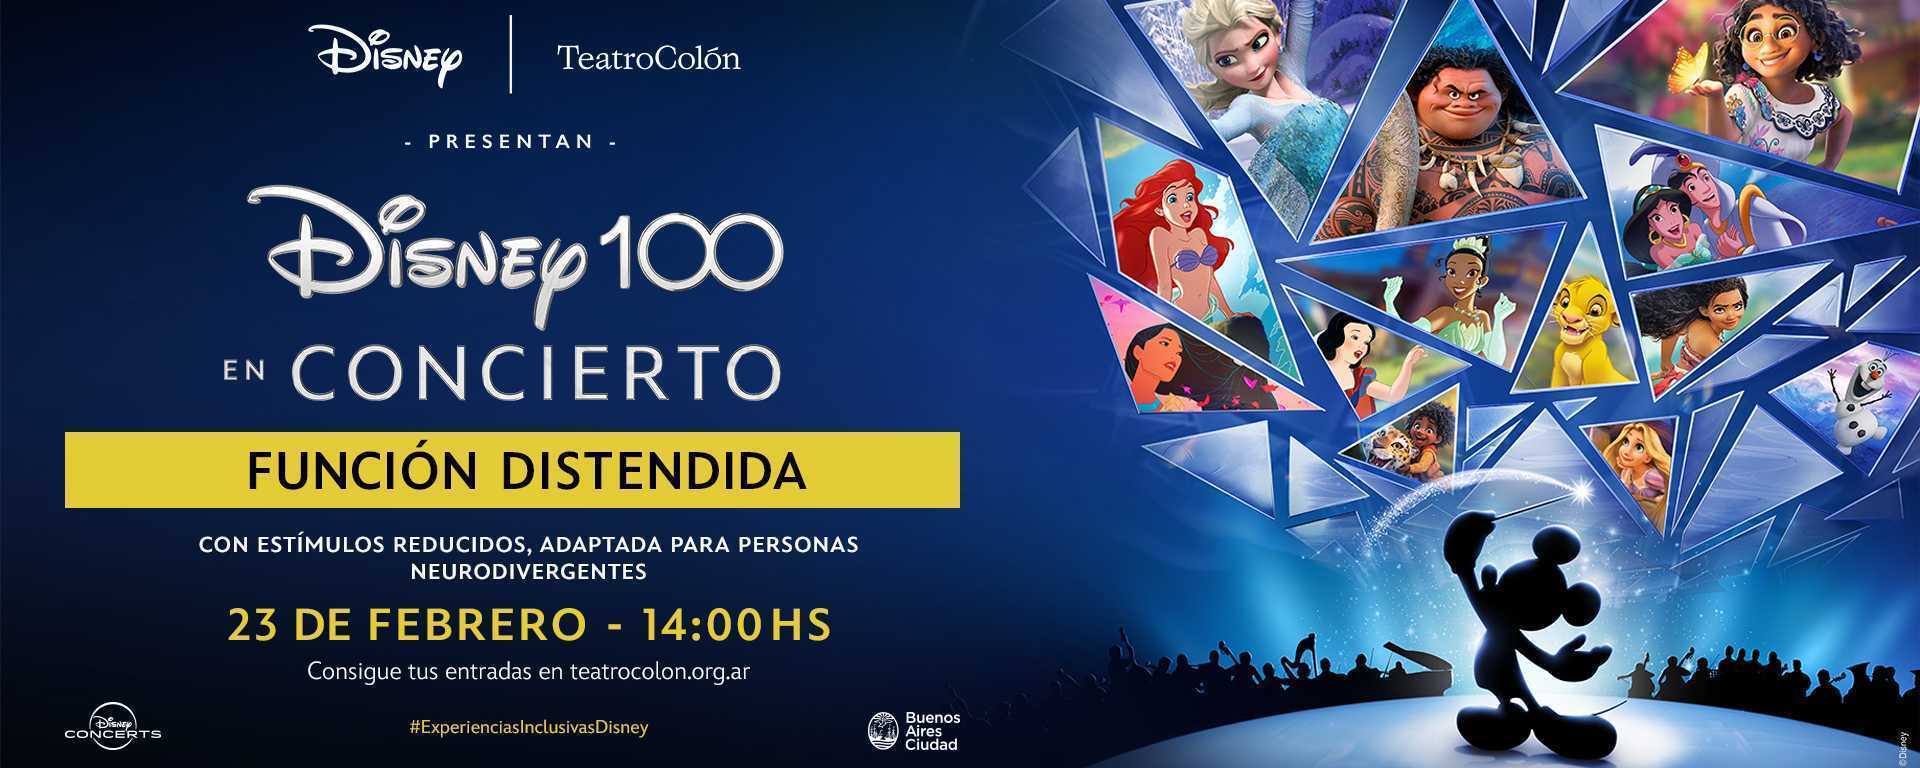 Disney 100 en Concierto presenta una función distendida en el Teatro Colón